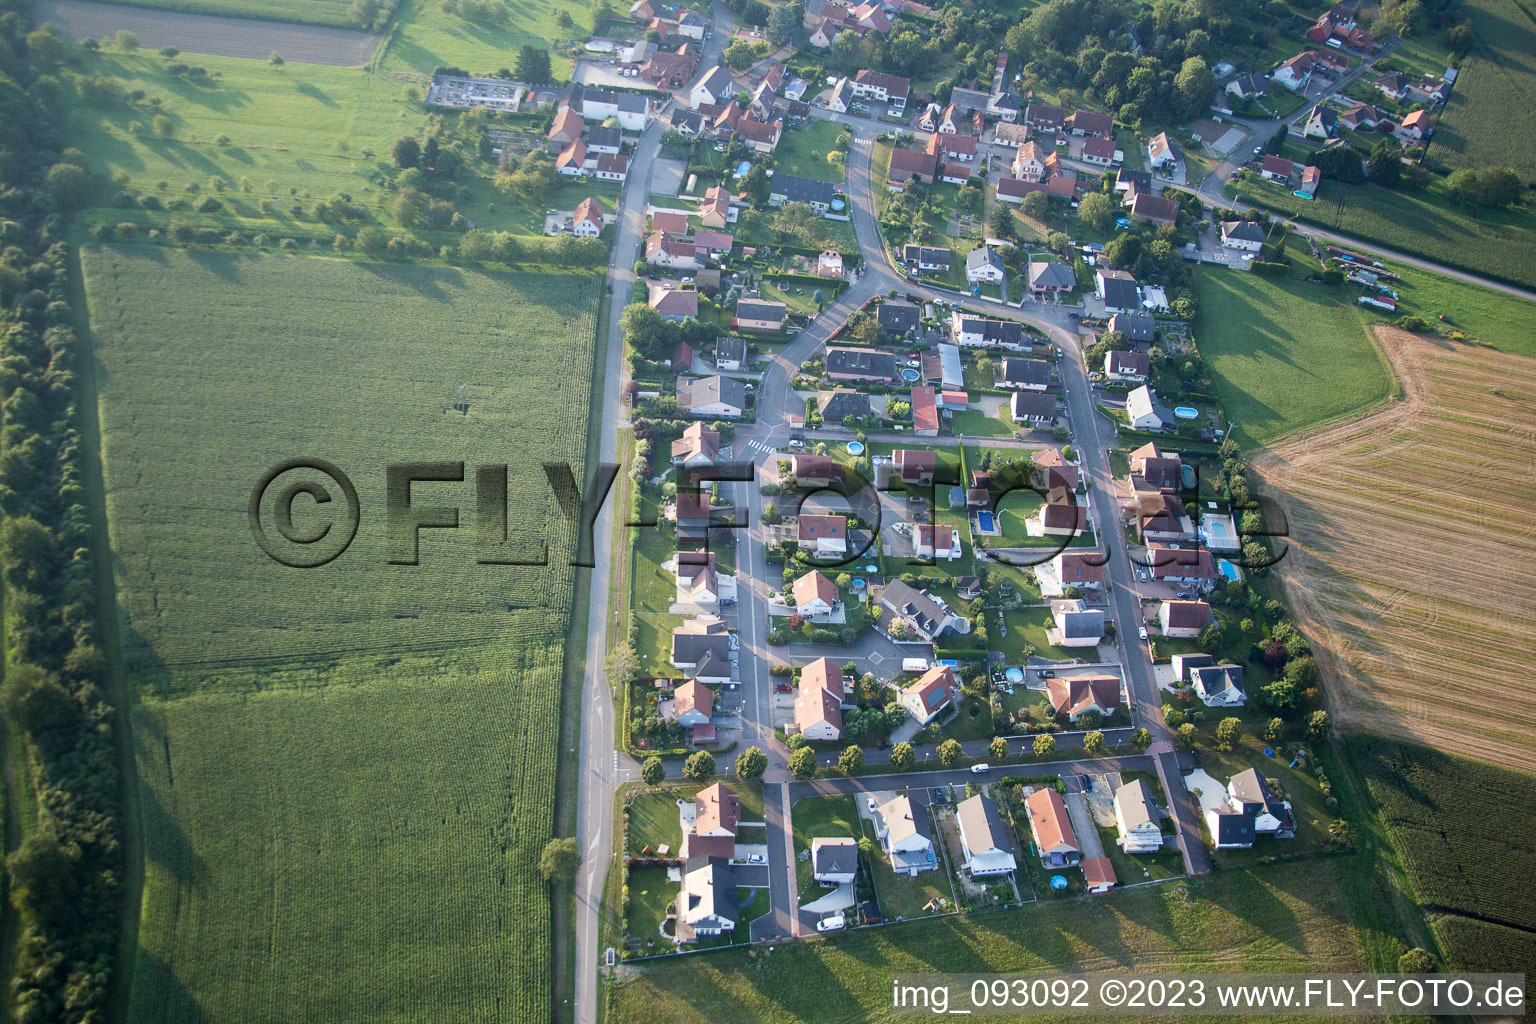 Vue aérienne de Neuhaeusel dans le département Bas Rhin, France